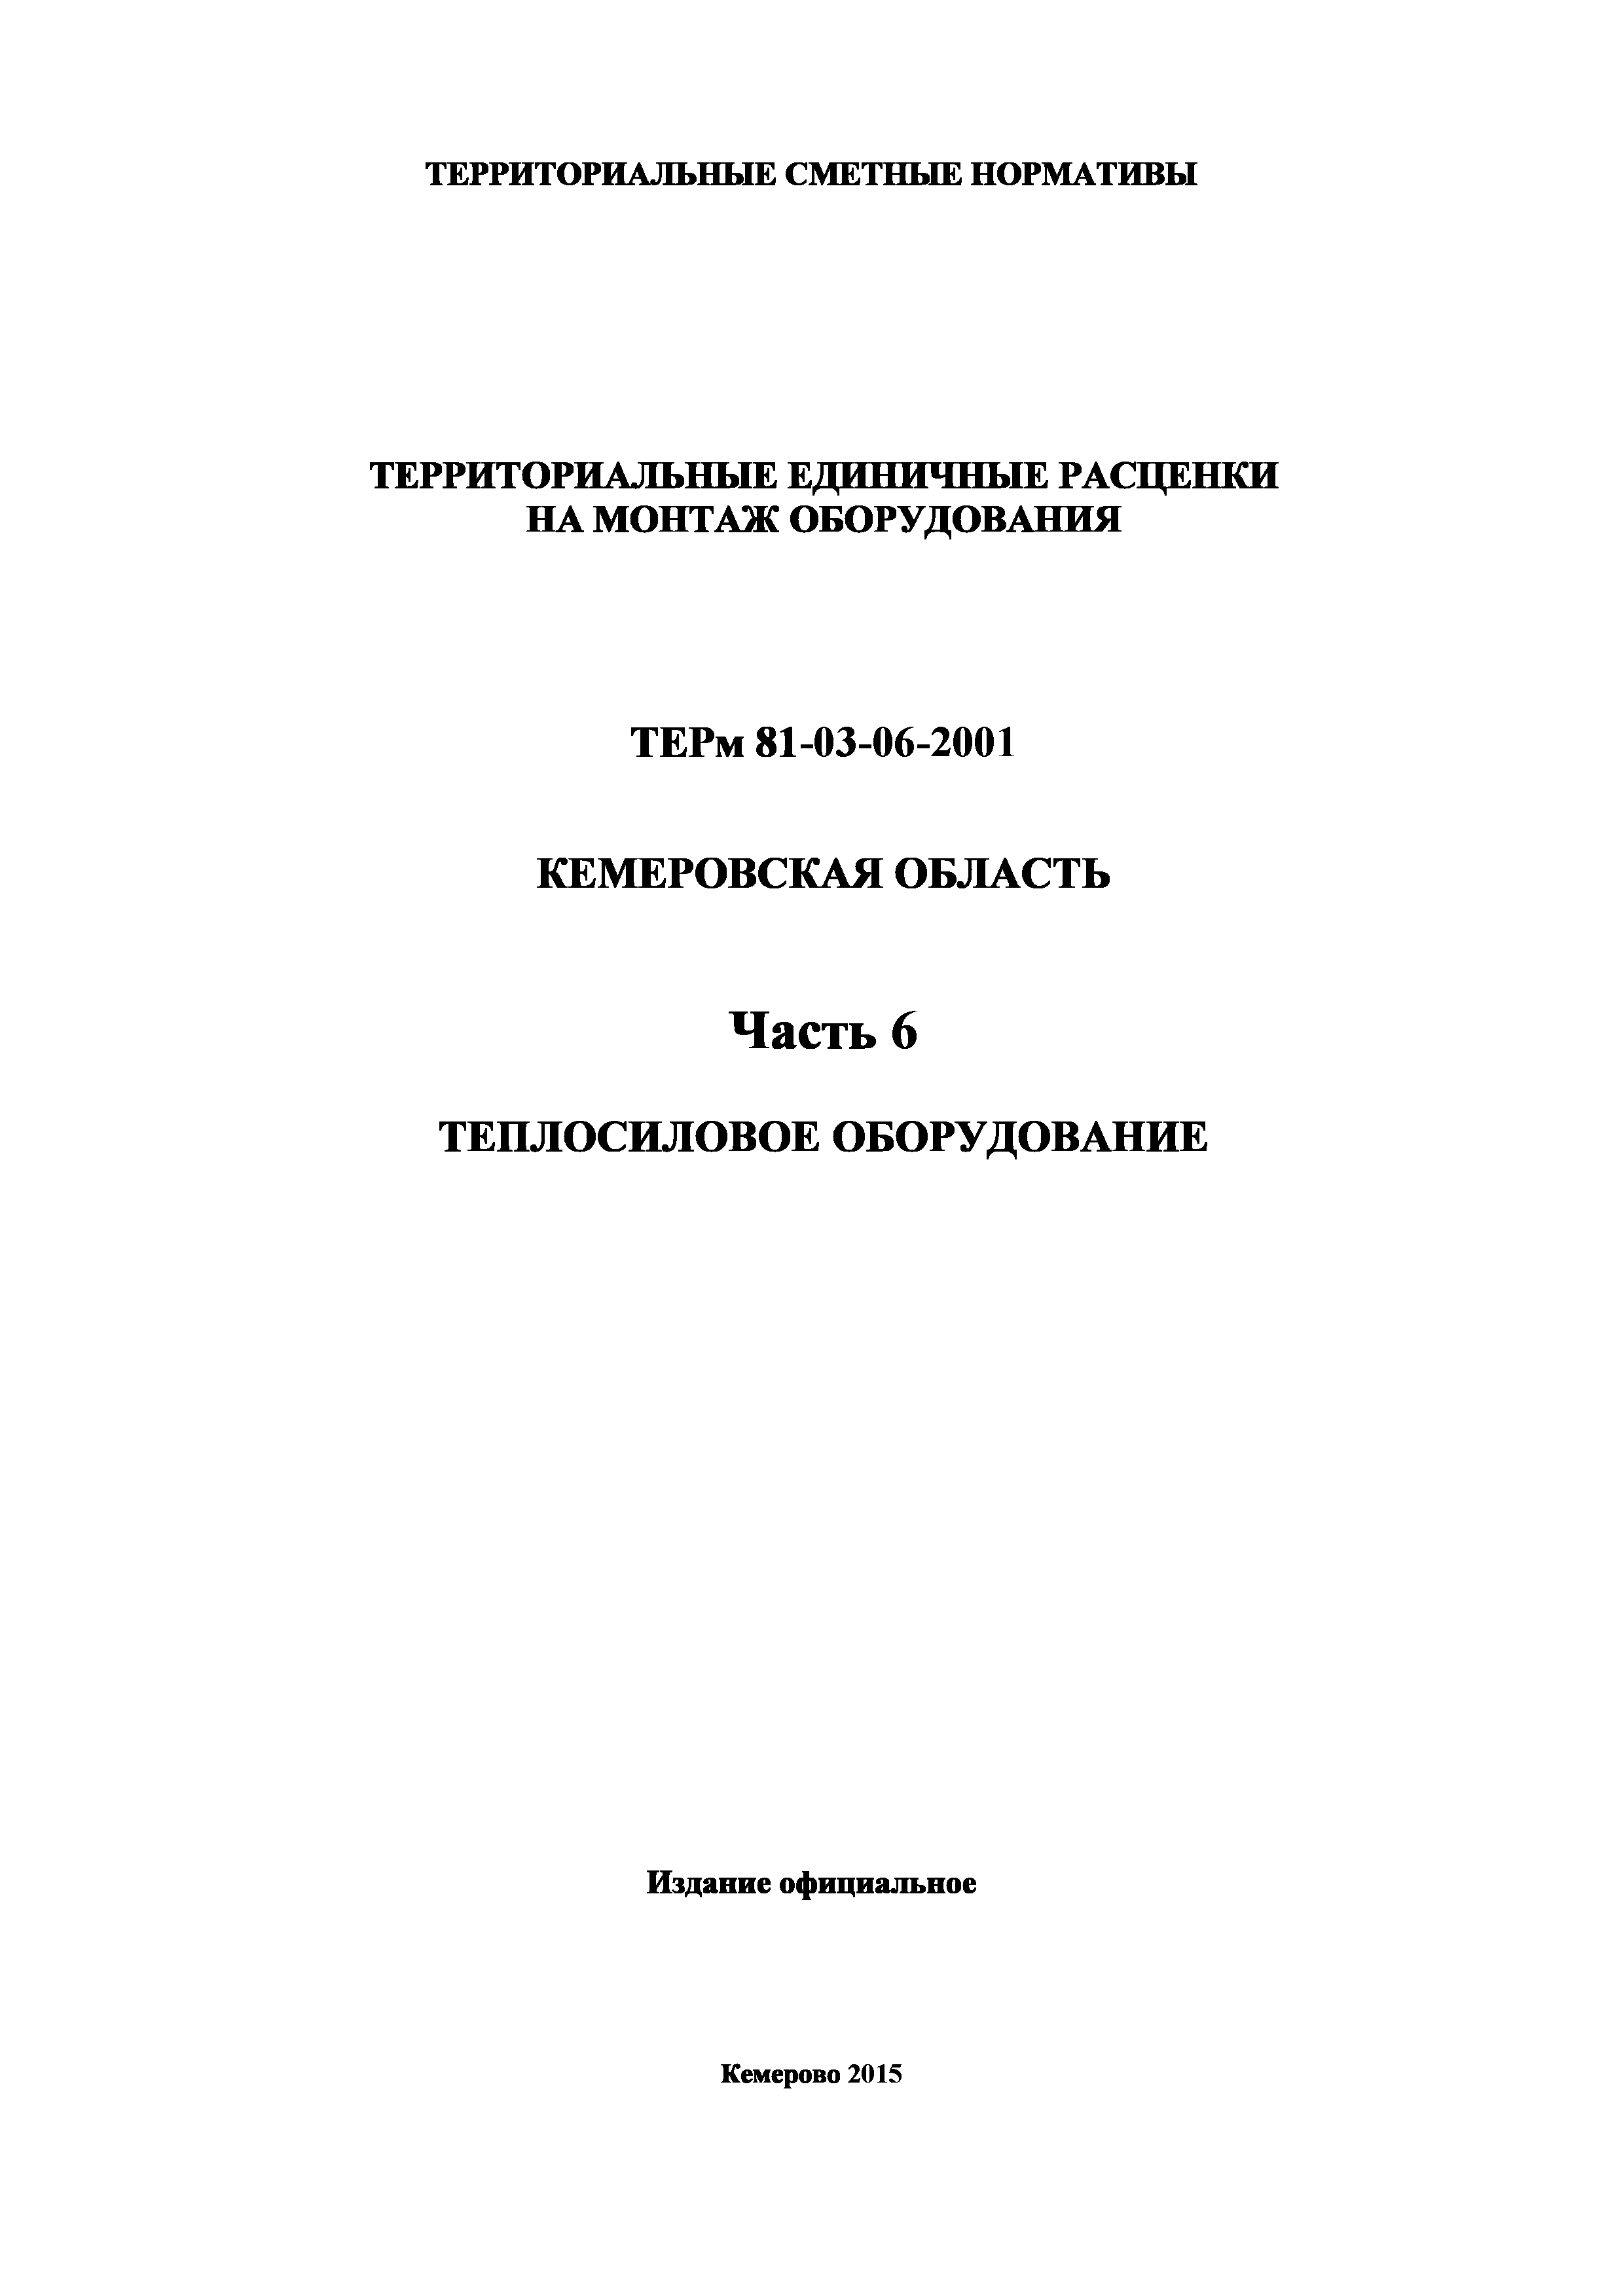 ТЕРм Кемеровская область 81-03-06-2001